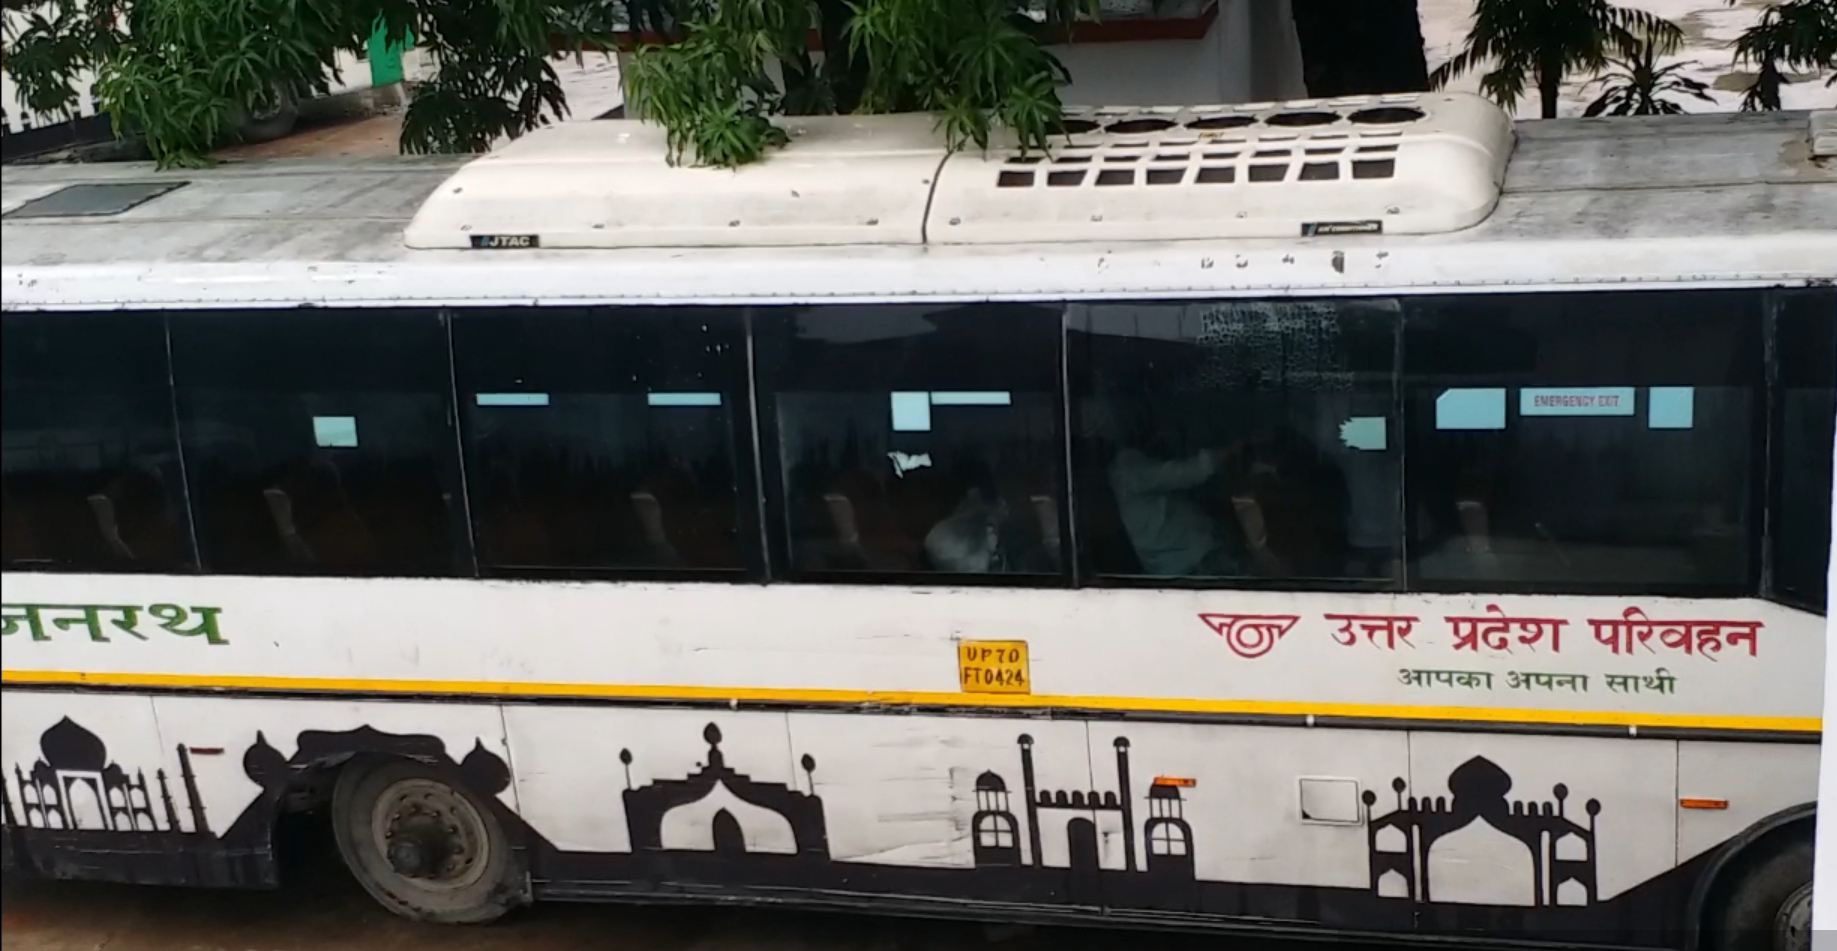 स्पेशल विंटर डिस्काउंट के रूप में यात्रियों को दी जाएगी छूट  upsrtc  यूपीएसआरटीसी ने घटाया एसी बसों का किराया  यूपीएसआरटीसी ने एसी बसों का किराया कम किया  Special Winter Discount  उत्तर प्रदेश राज्य सड़क परिवहन निगम  Uttar Pradesh State Road Transport Corporation  यूपी रोडवेज की एसी बसों का किराया हुआ कम